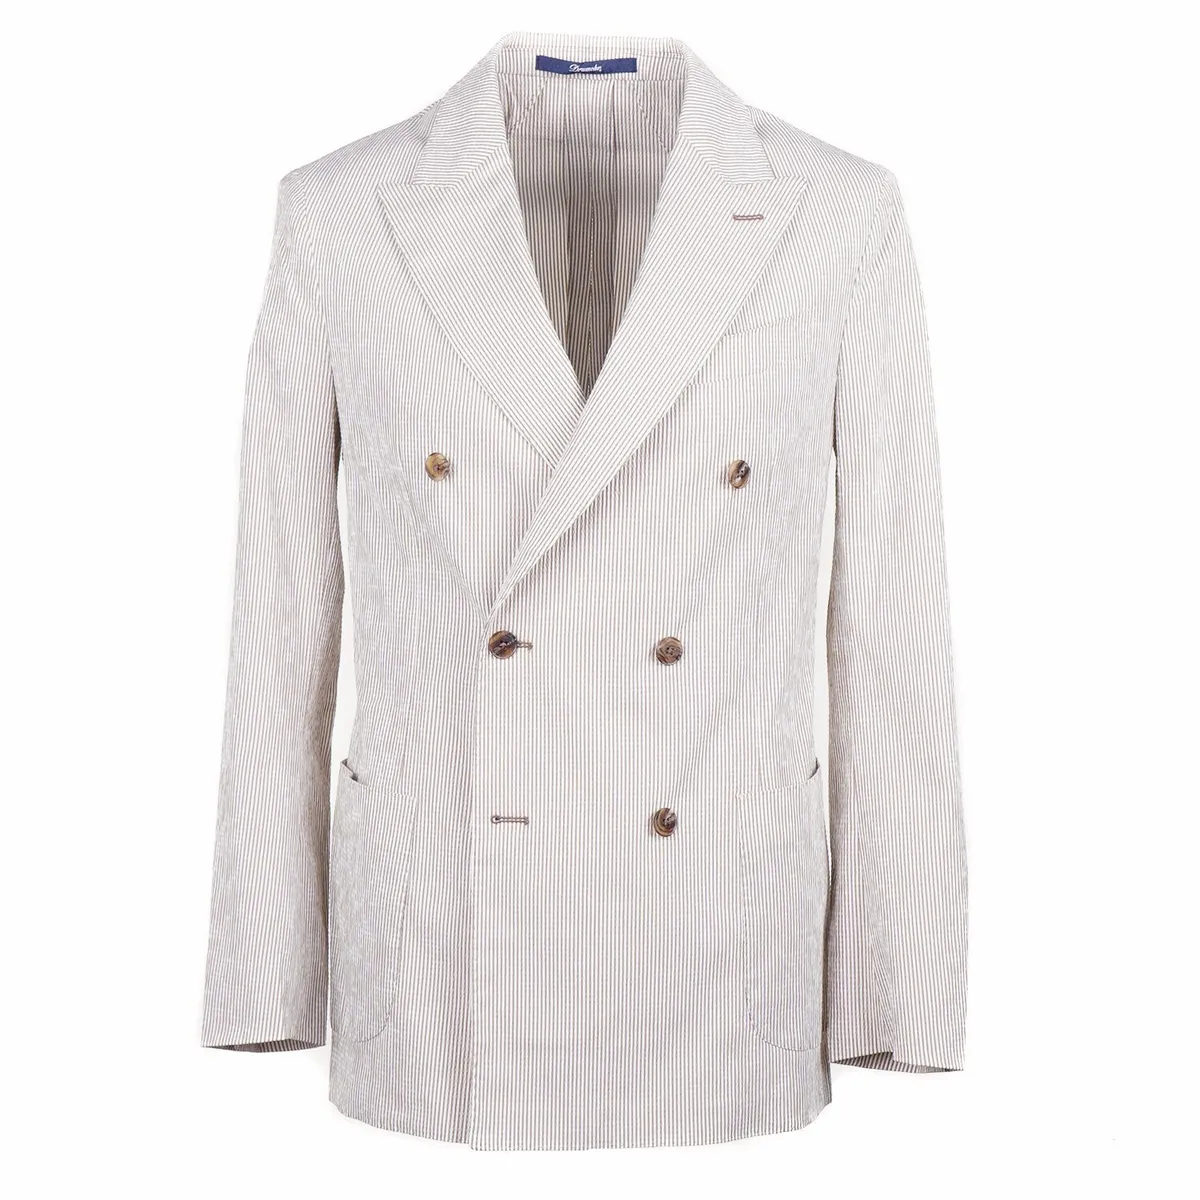 Drumohr Summer 2023 Slim-Fit Lightweight Seersucker Cotton Suit 40R (Eu 50)  NWT